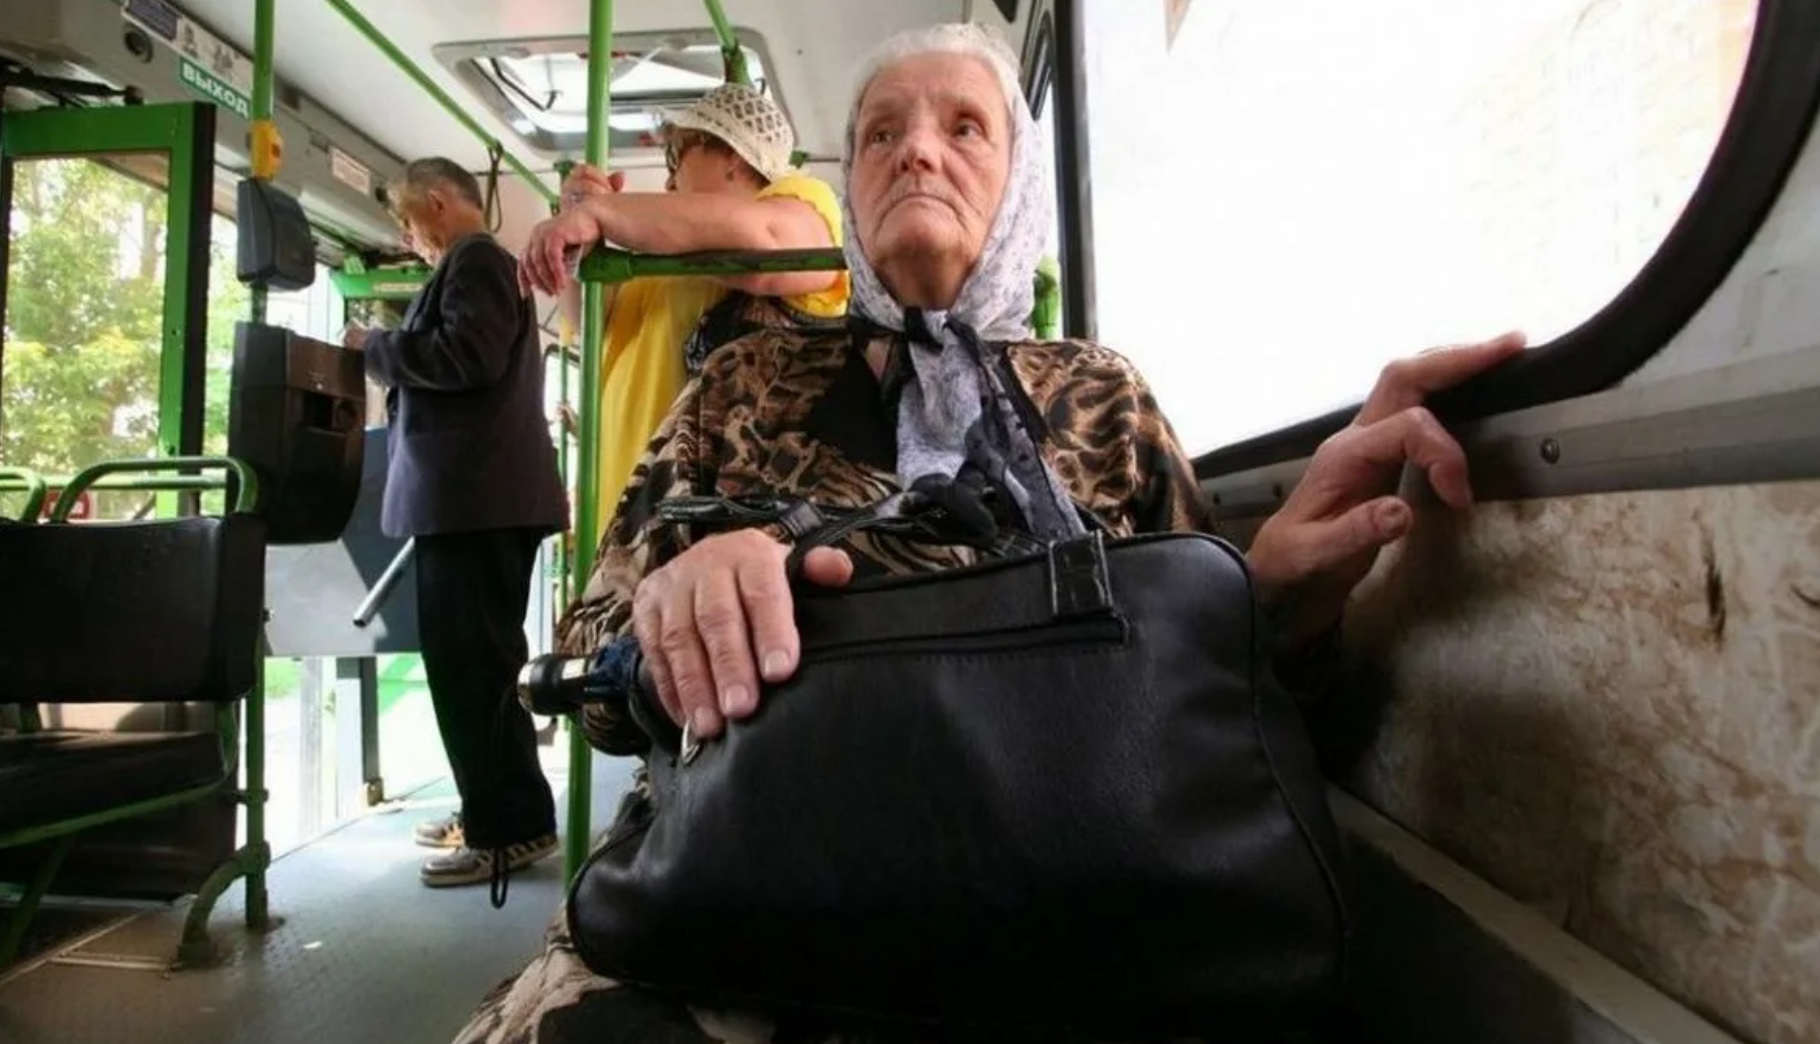 Социальный проезд в общественном транспорте. Пенсионеры в общественном транспорте. Пенсионеры в автобусе. Пожилые люди в общественном транспорте. Транспорт для пожилых людей.